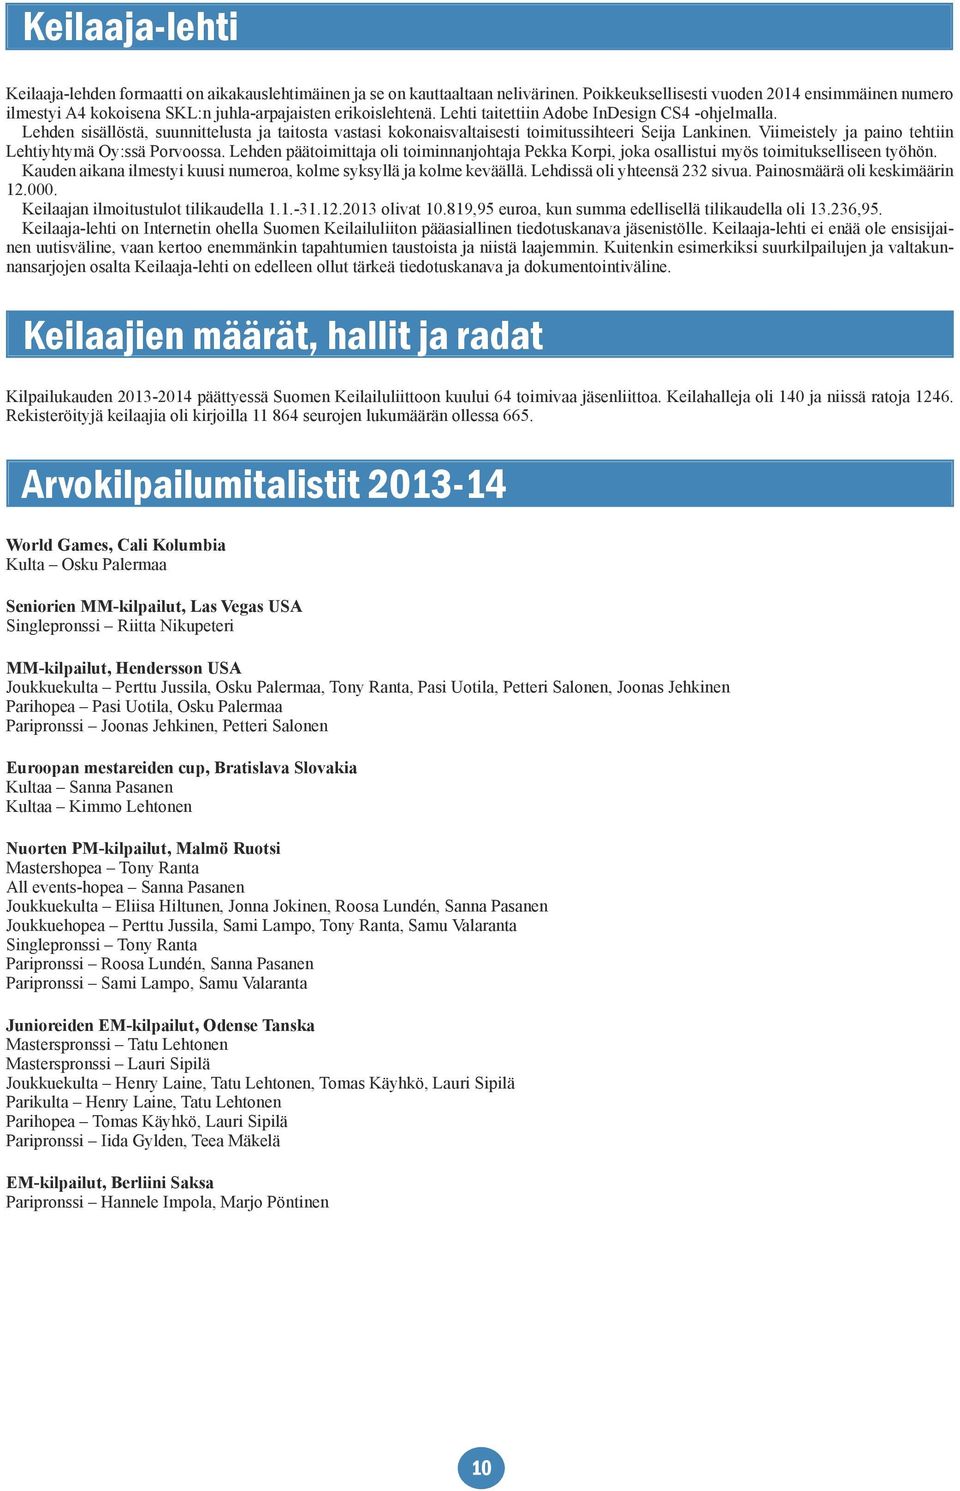 Lehden sisällöstä, suunnittelusta ja taitosta vastasi kokonaisvaltaisesti toimitussihteeri Seija Lankinen. Viimeistely ja paino tehtiin Lehtiyhtymä Oy:ssä Porvoossa.